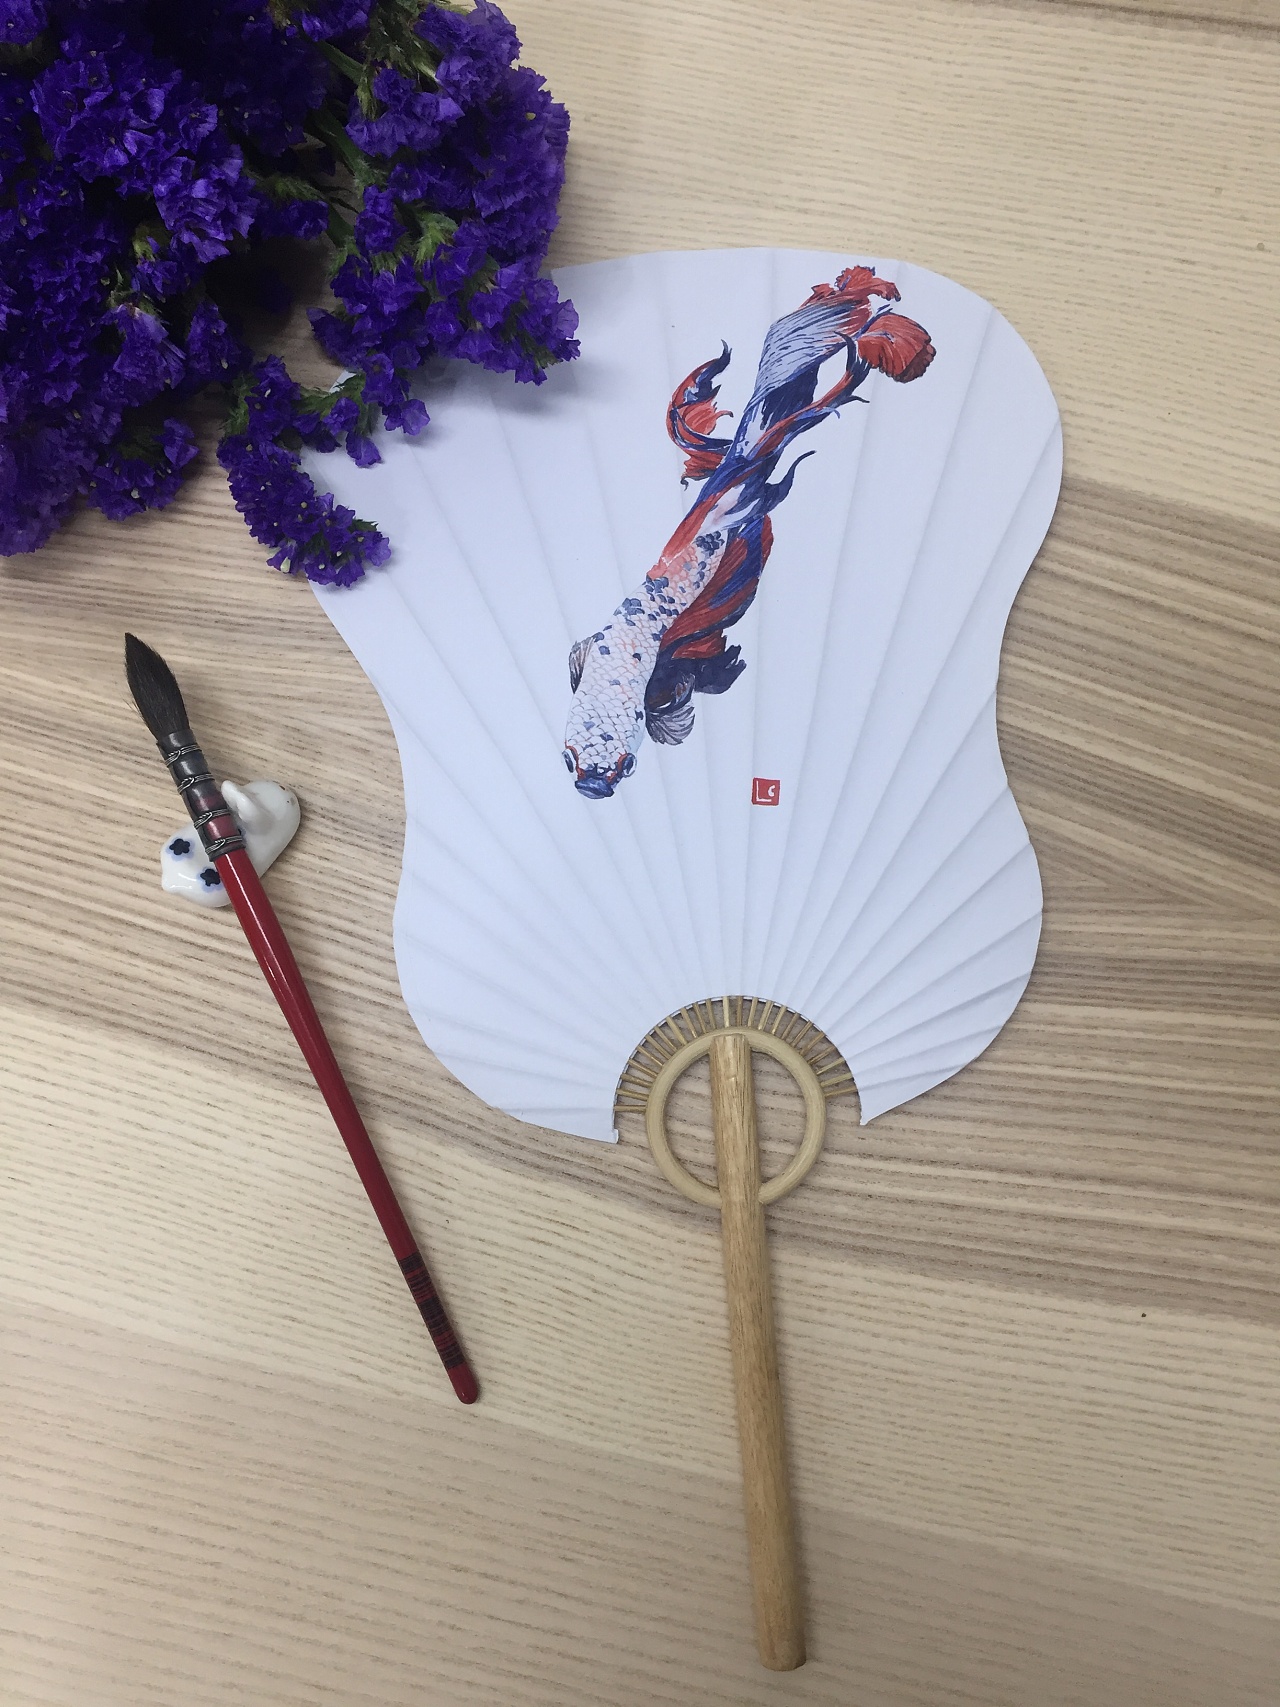 可爱卡通动物迷你便携圆形折扇夏季随身学生创意小礼品折叠扇子萌-阿里巴巴